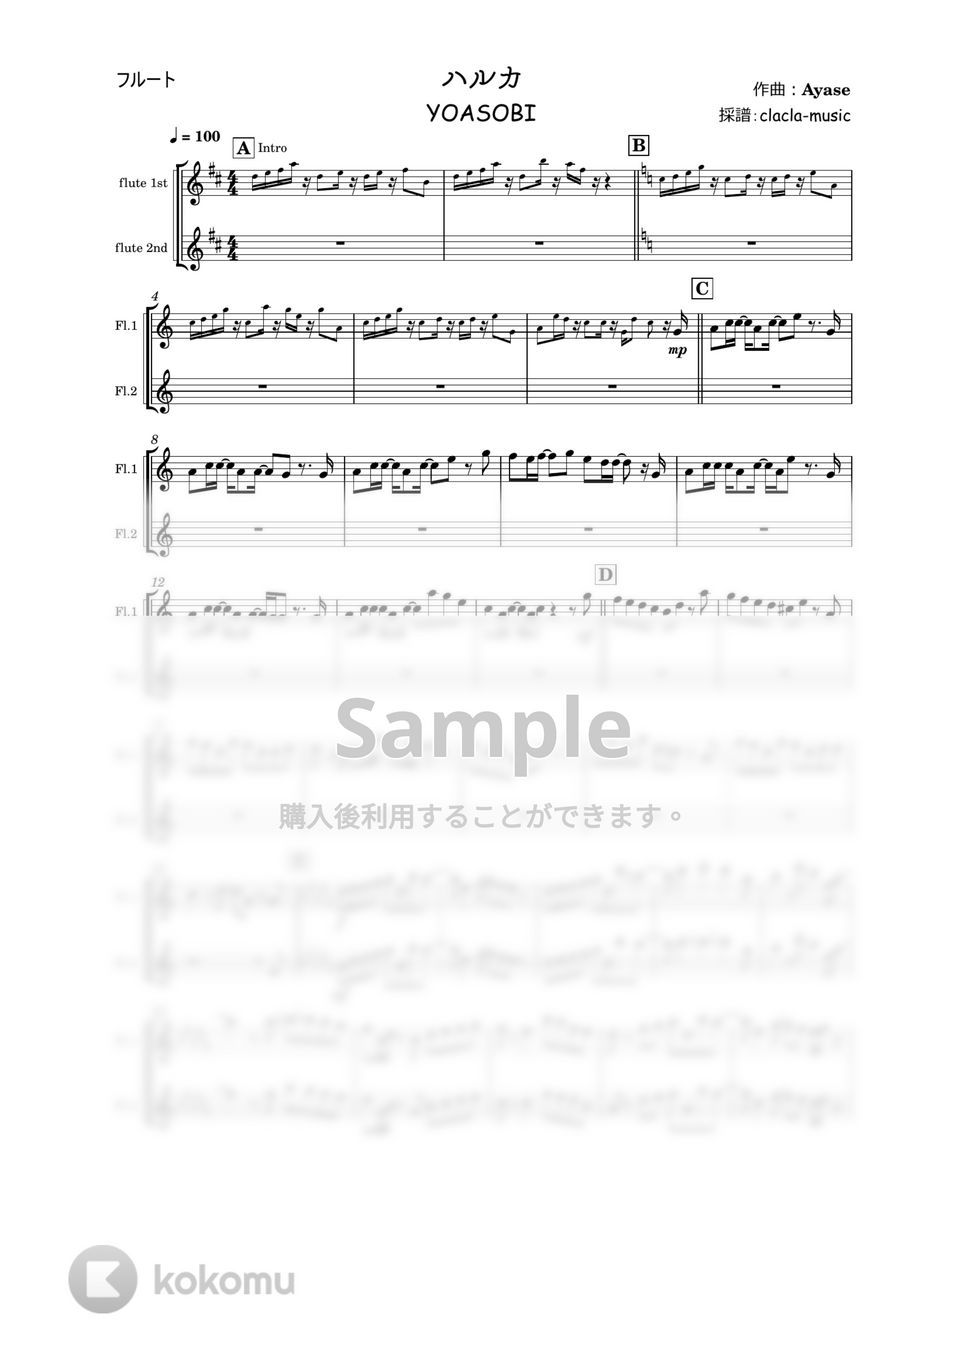 YOASOBI - ハルカ (フルート、ハモリパート付き) by clacla-music